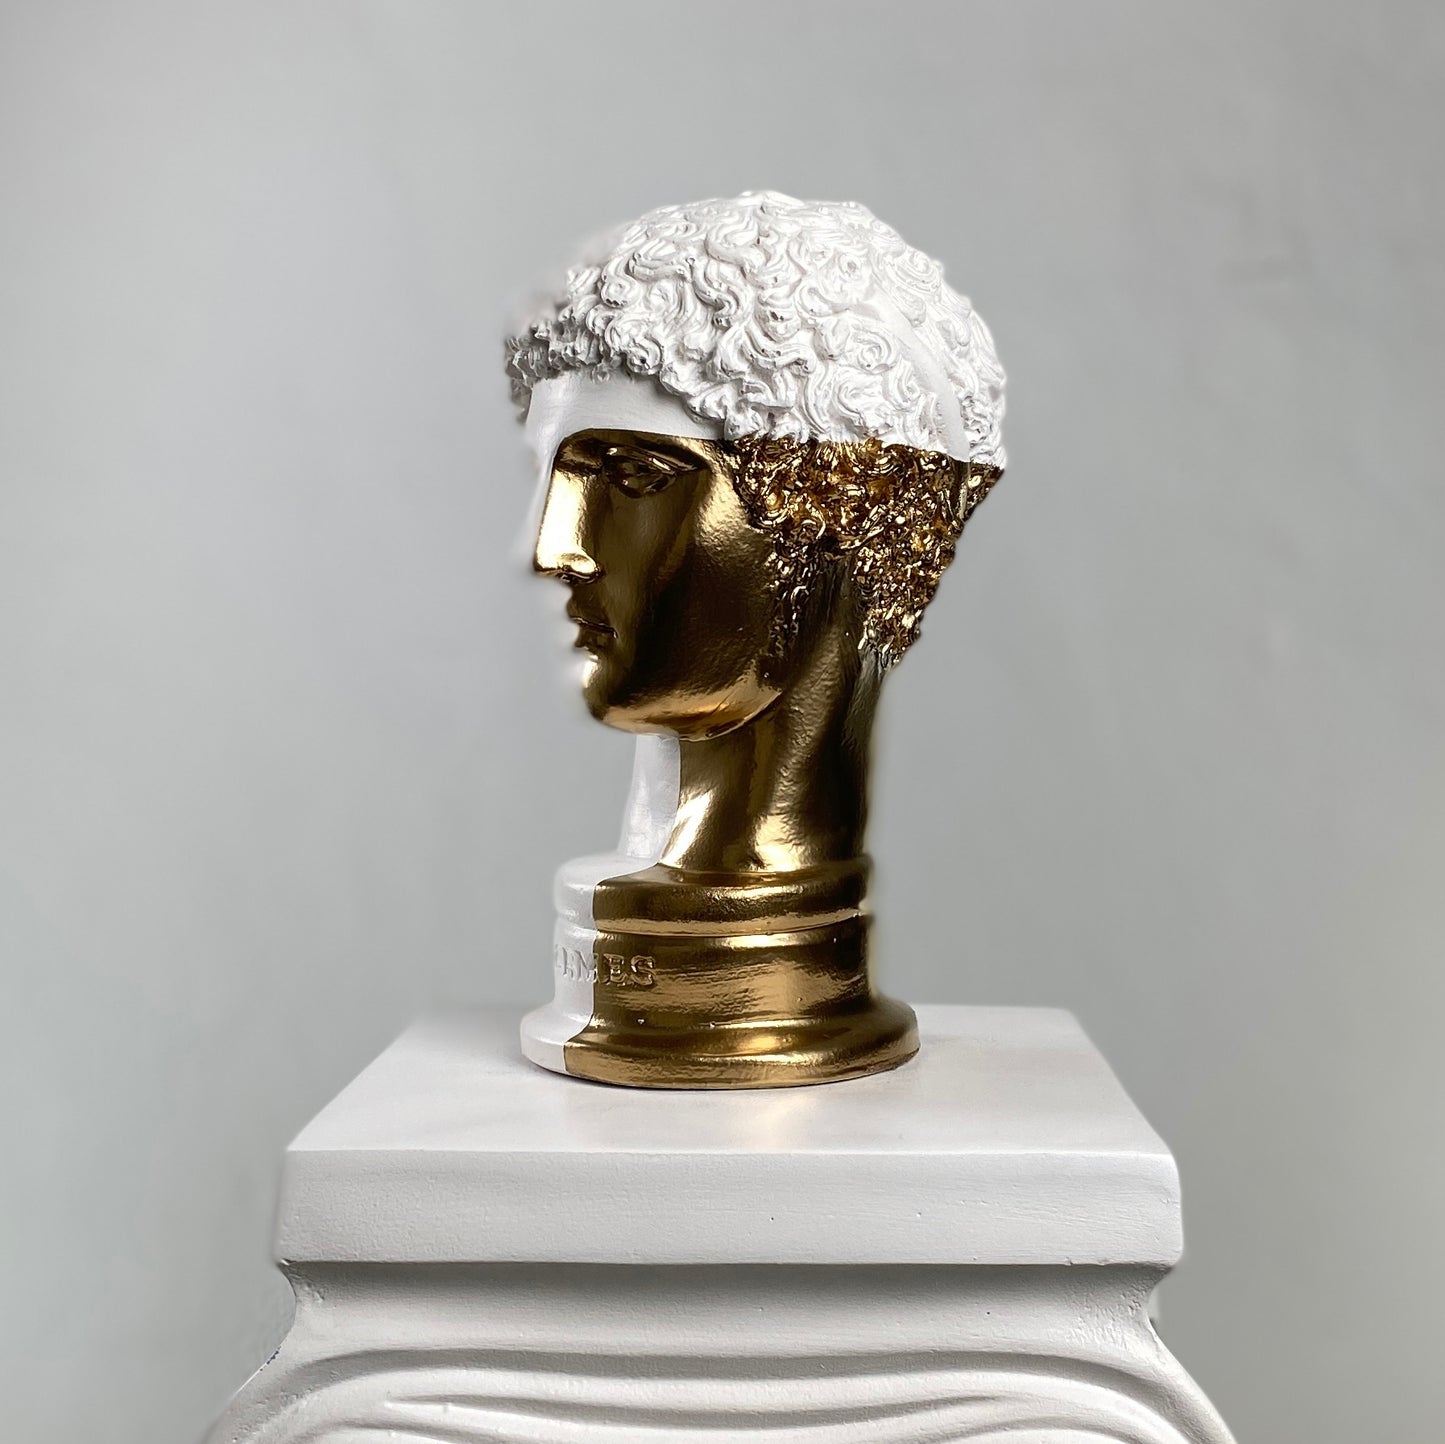 Hermes 'Gold Mail' Pop Art Sculpture, Modern Home Decor